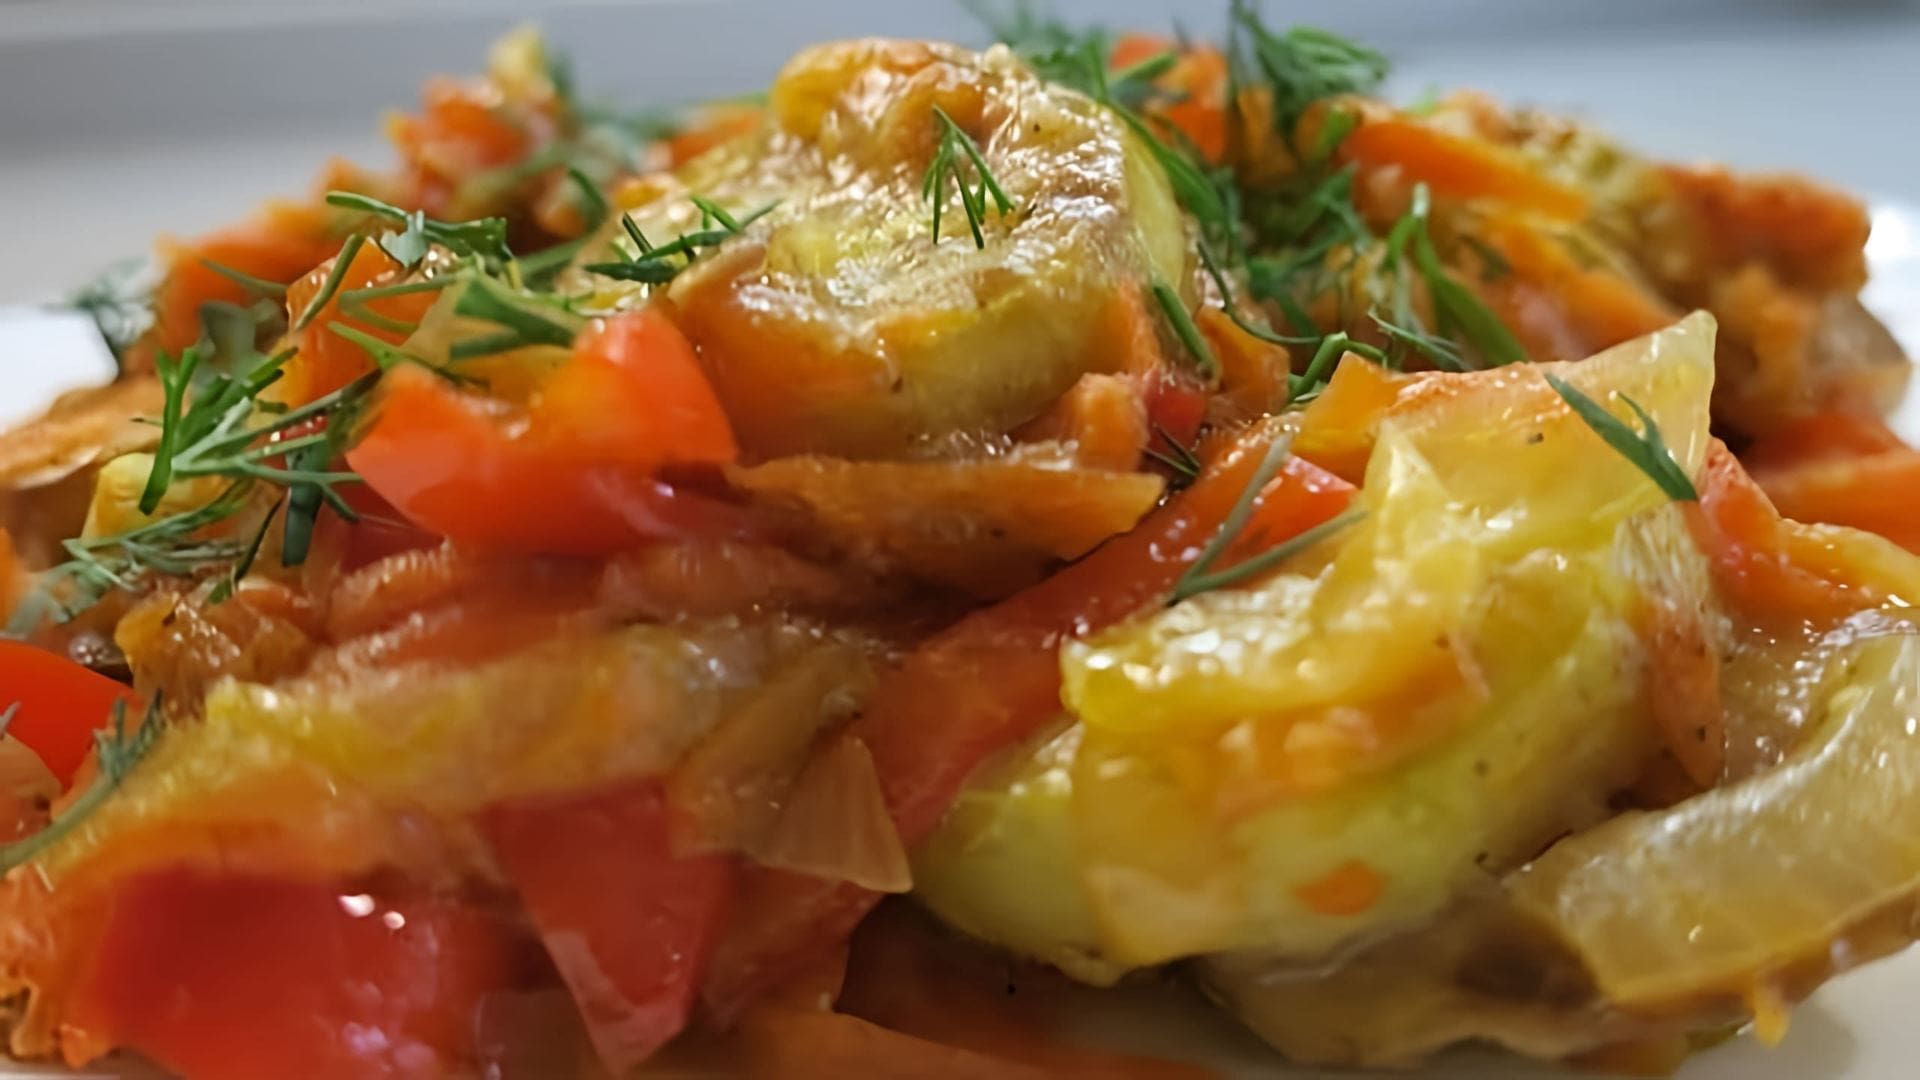 В этом видео демонстрируется рецепт приготовления тушеных кабачков с овощами